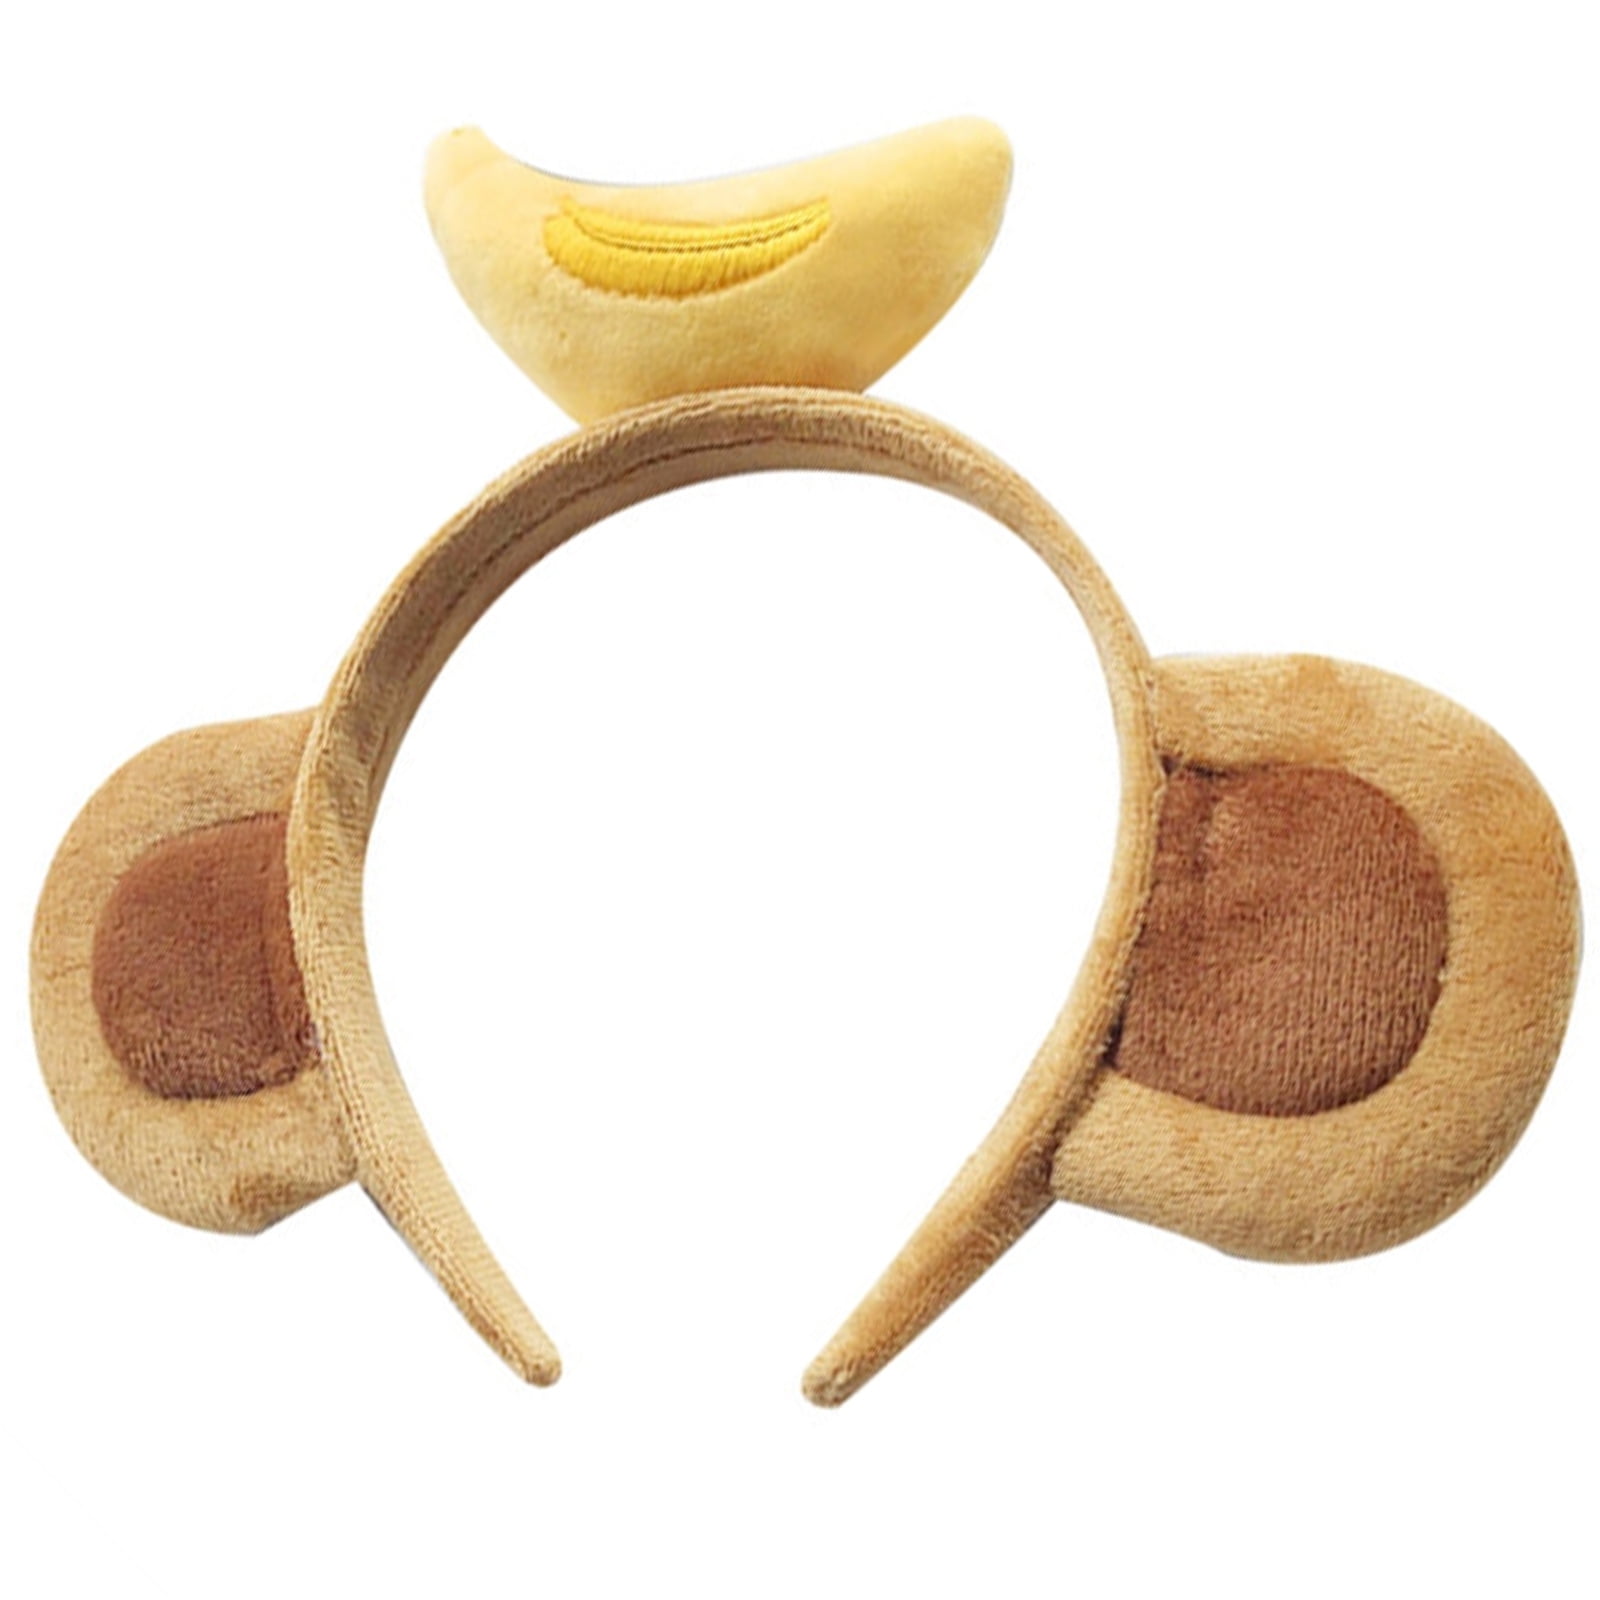 ΚΕΡΑΤΟ Unisex Monkey Ears Headband with Banana on The Top Banana Headband Playful Animals Monkey Costume Accessory Monkey Ears Alice Hair Band Headband Fancy Dress B 